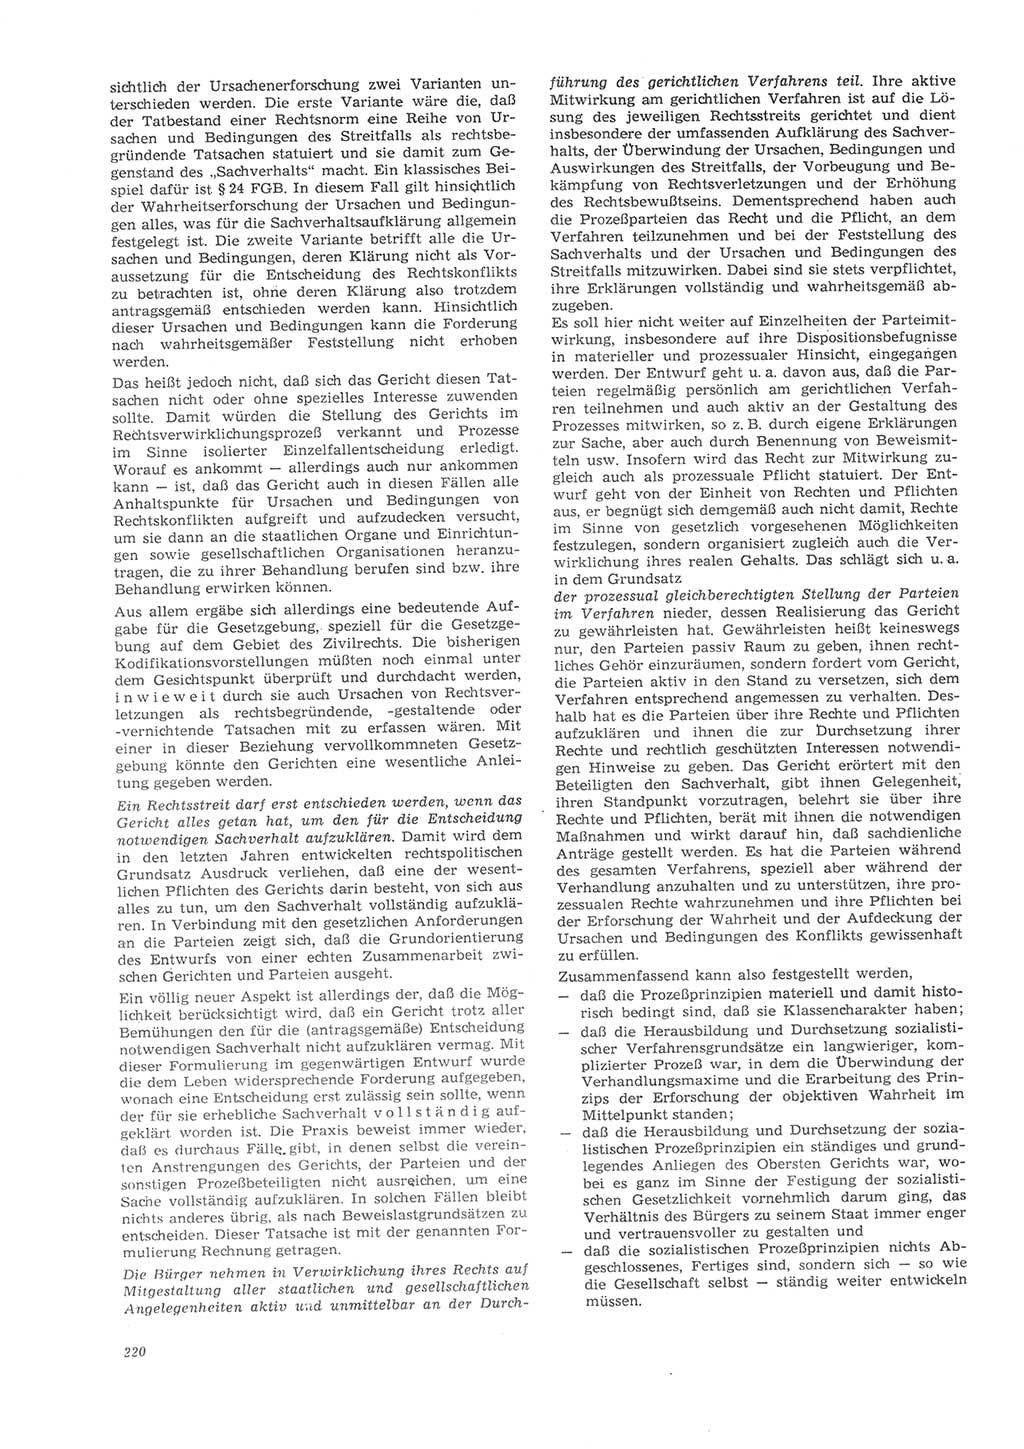 Neue Justiz (NJ), Zeitschrift für Recht und Rechtswissenschaft [Deutsche Demokratische Republik (DDR)], 26. Jahrgang 1972, Seite 220 (NJ DDR 1972, S. 220)